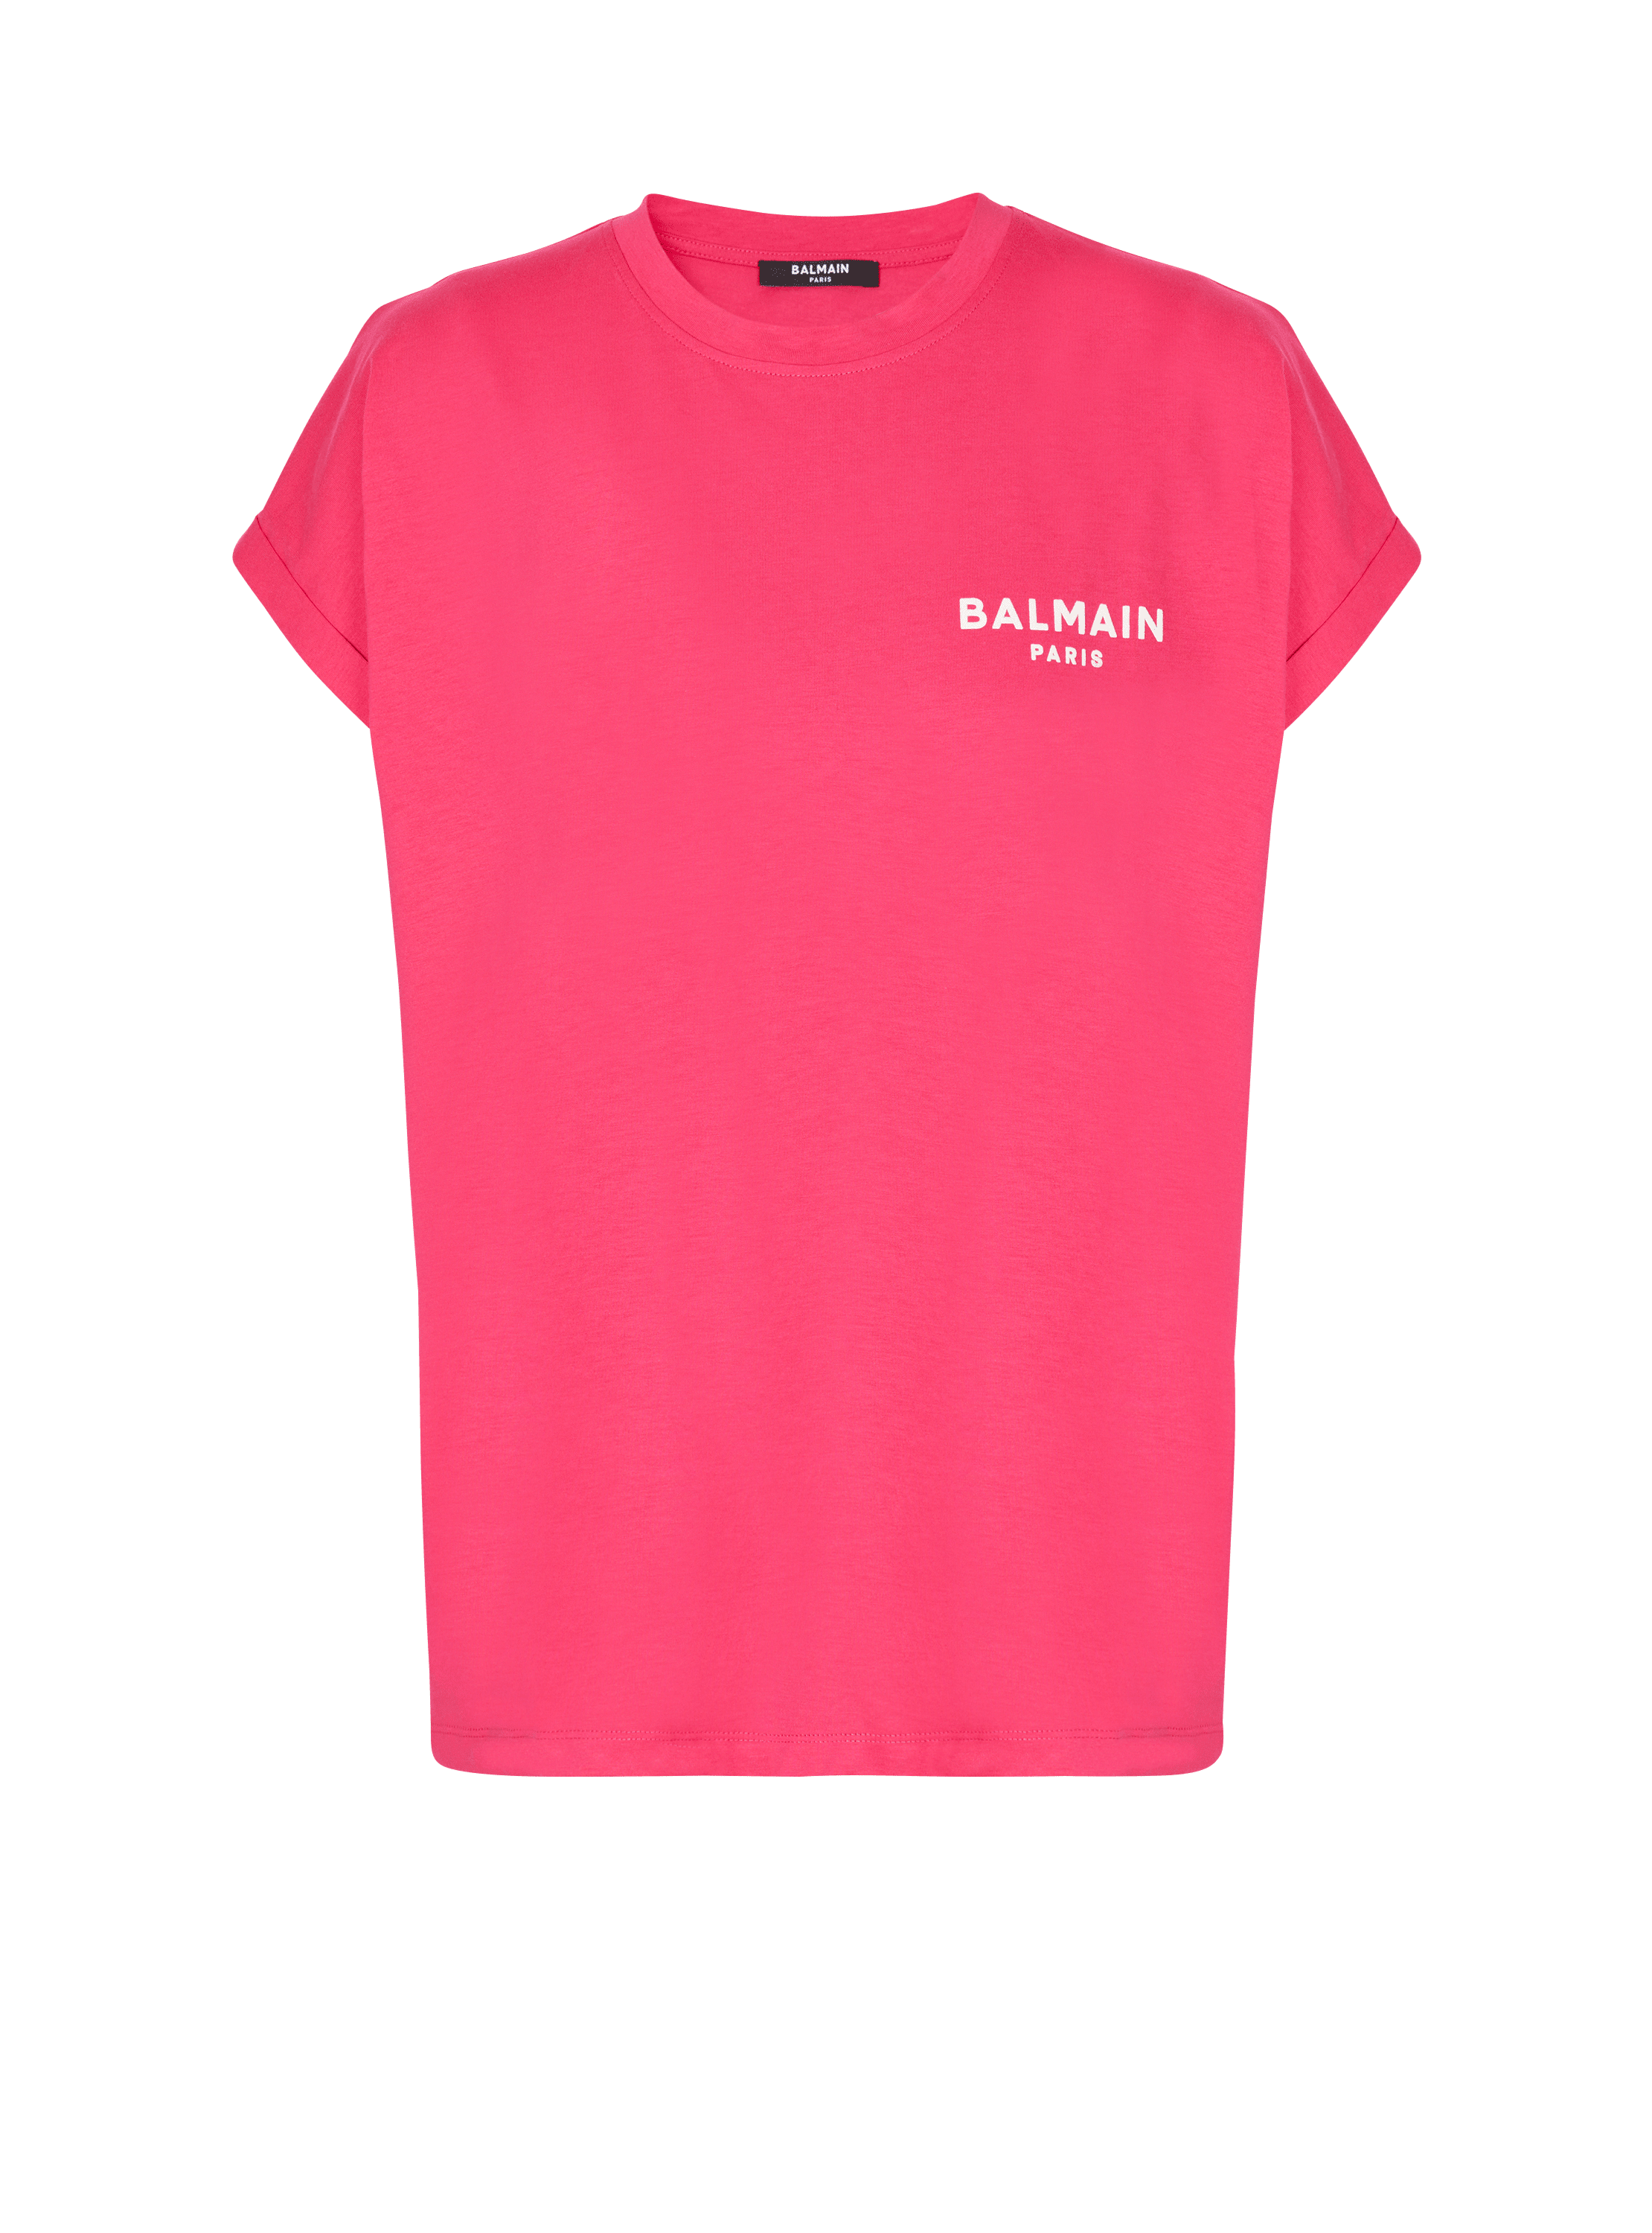 T-shirt Balmain floqué, rose, hi-res